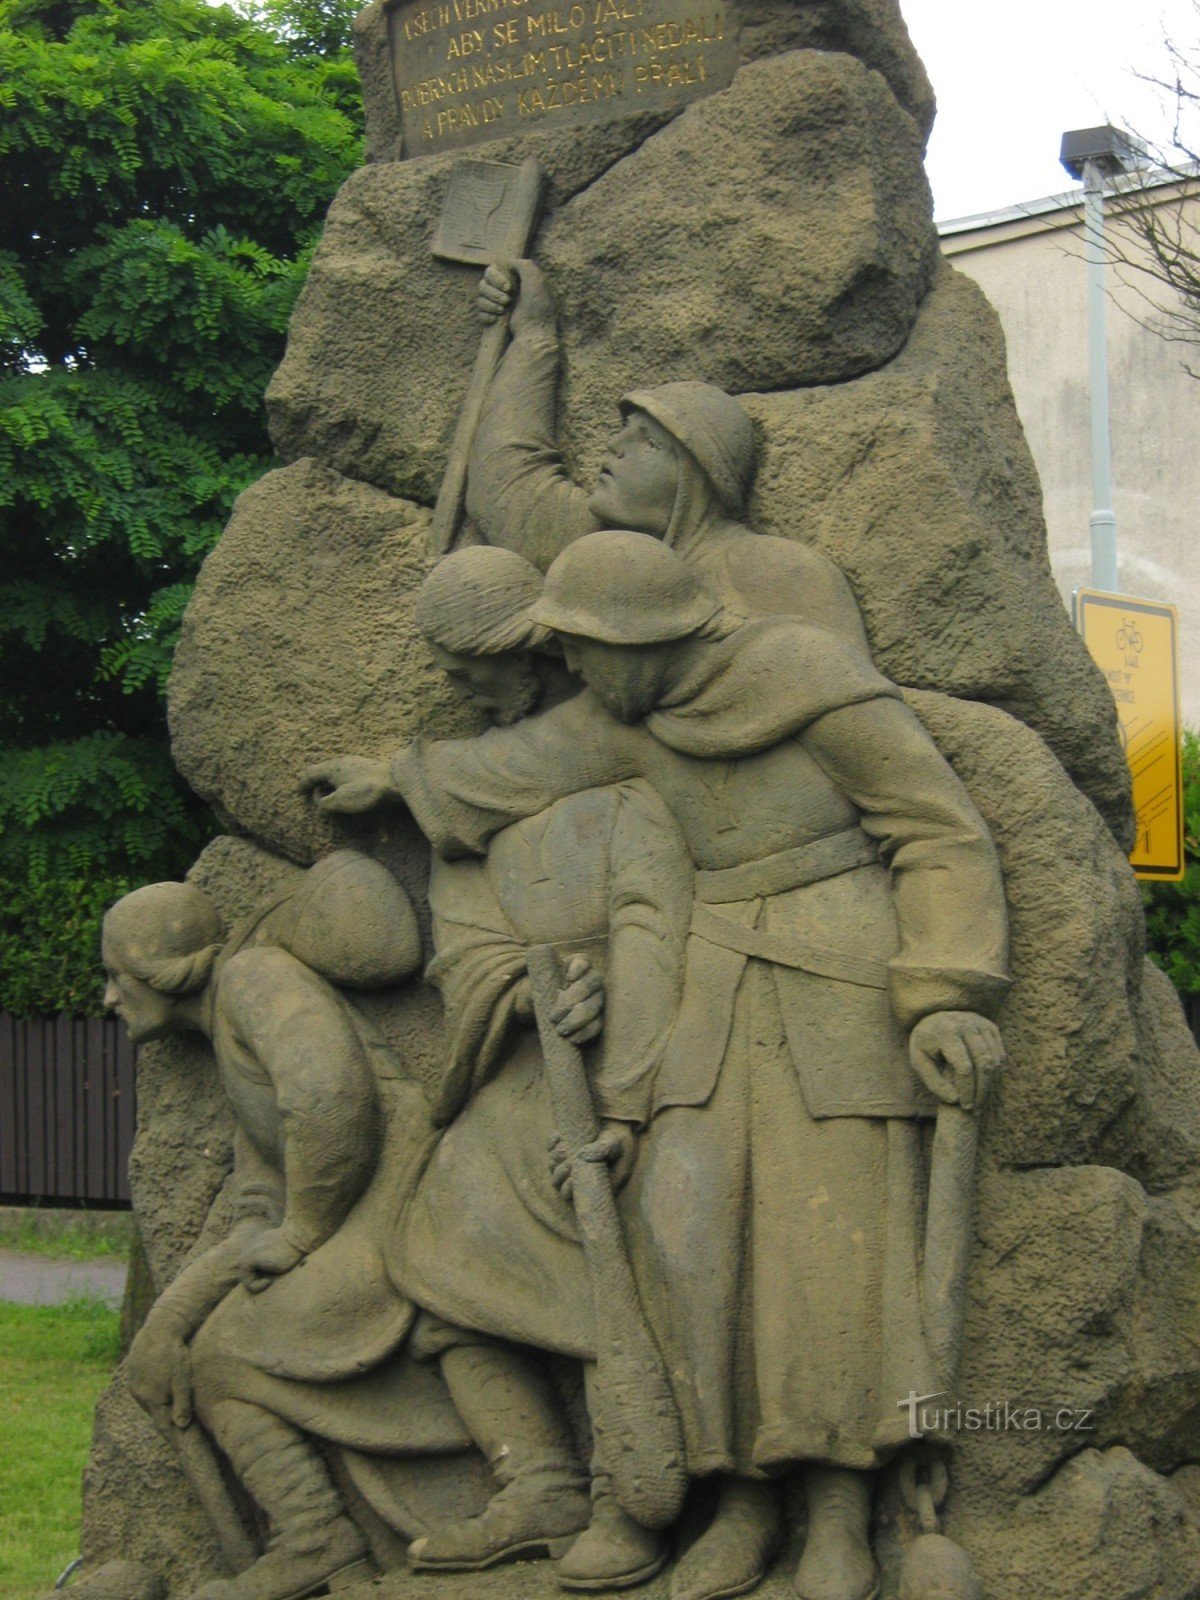 detalhe do monumento Jan Hus